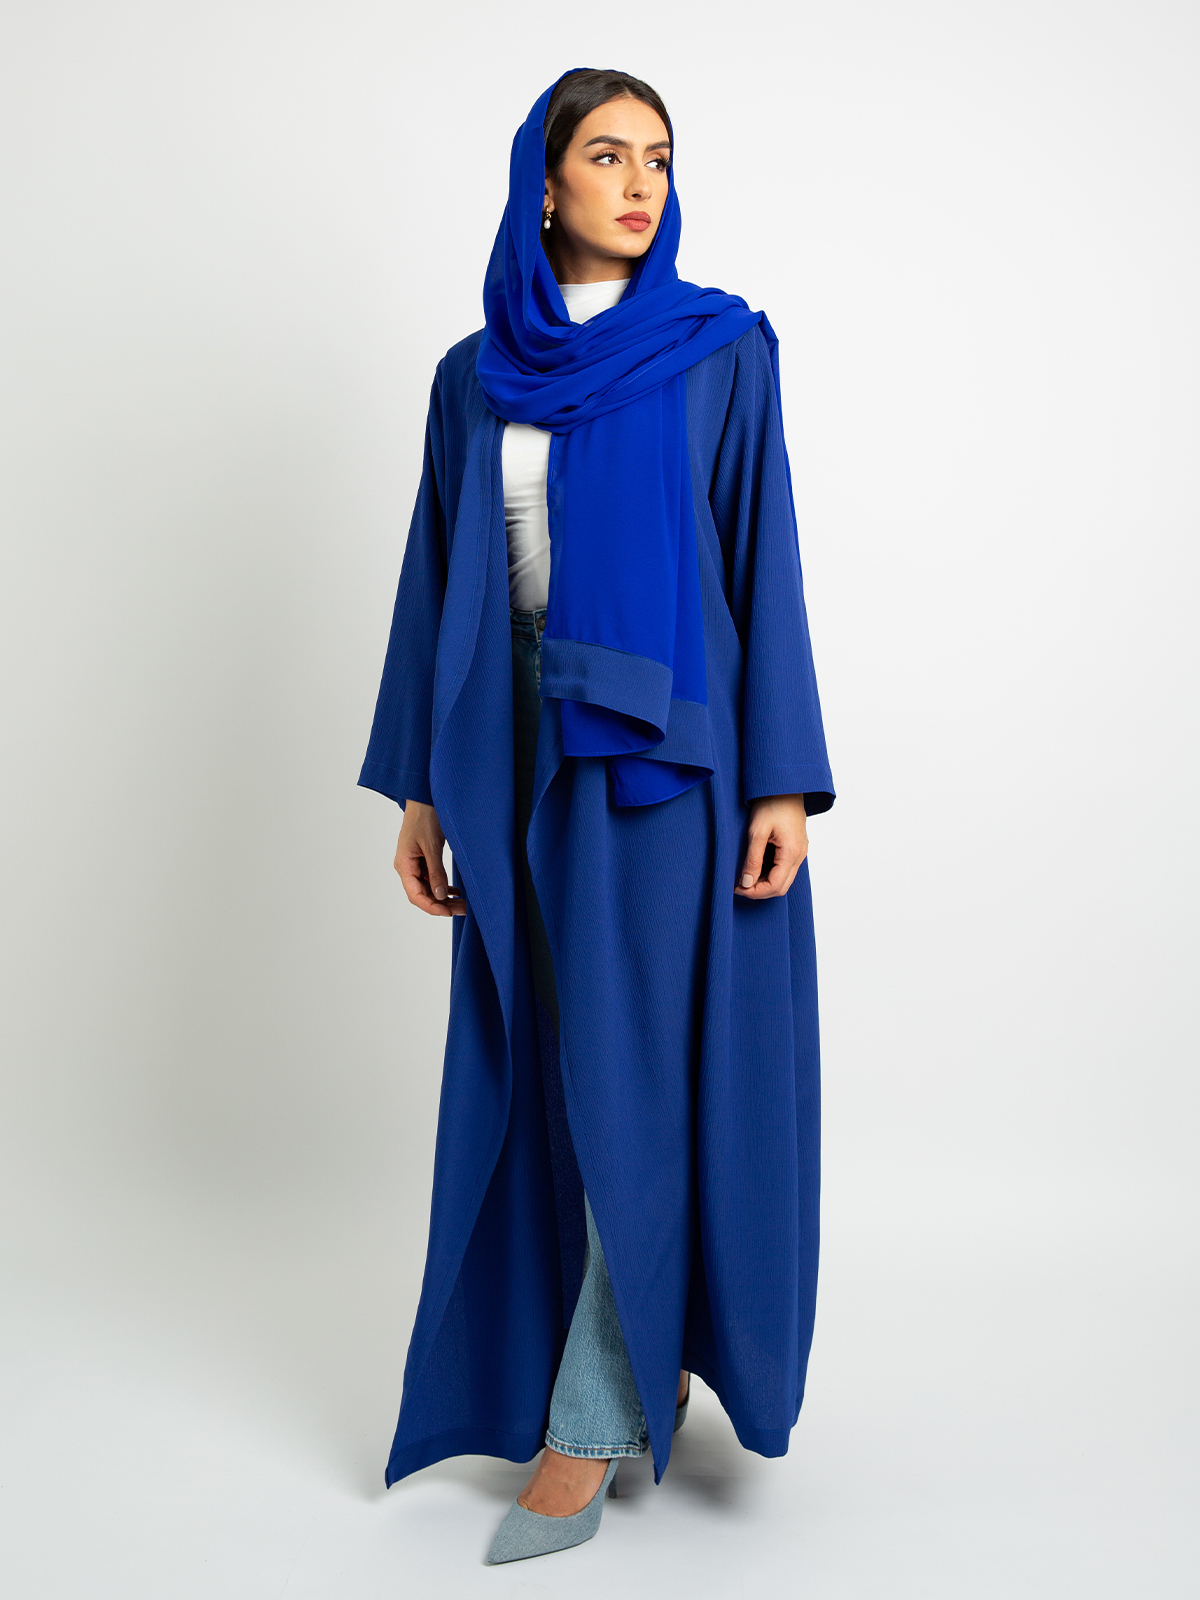 Indigo Blue - Comfy Regular-fit Long Open Abaya in Fancy Yoryu Fabric